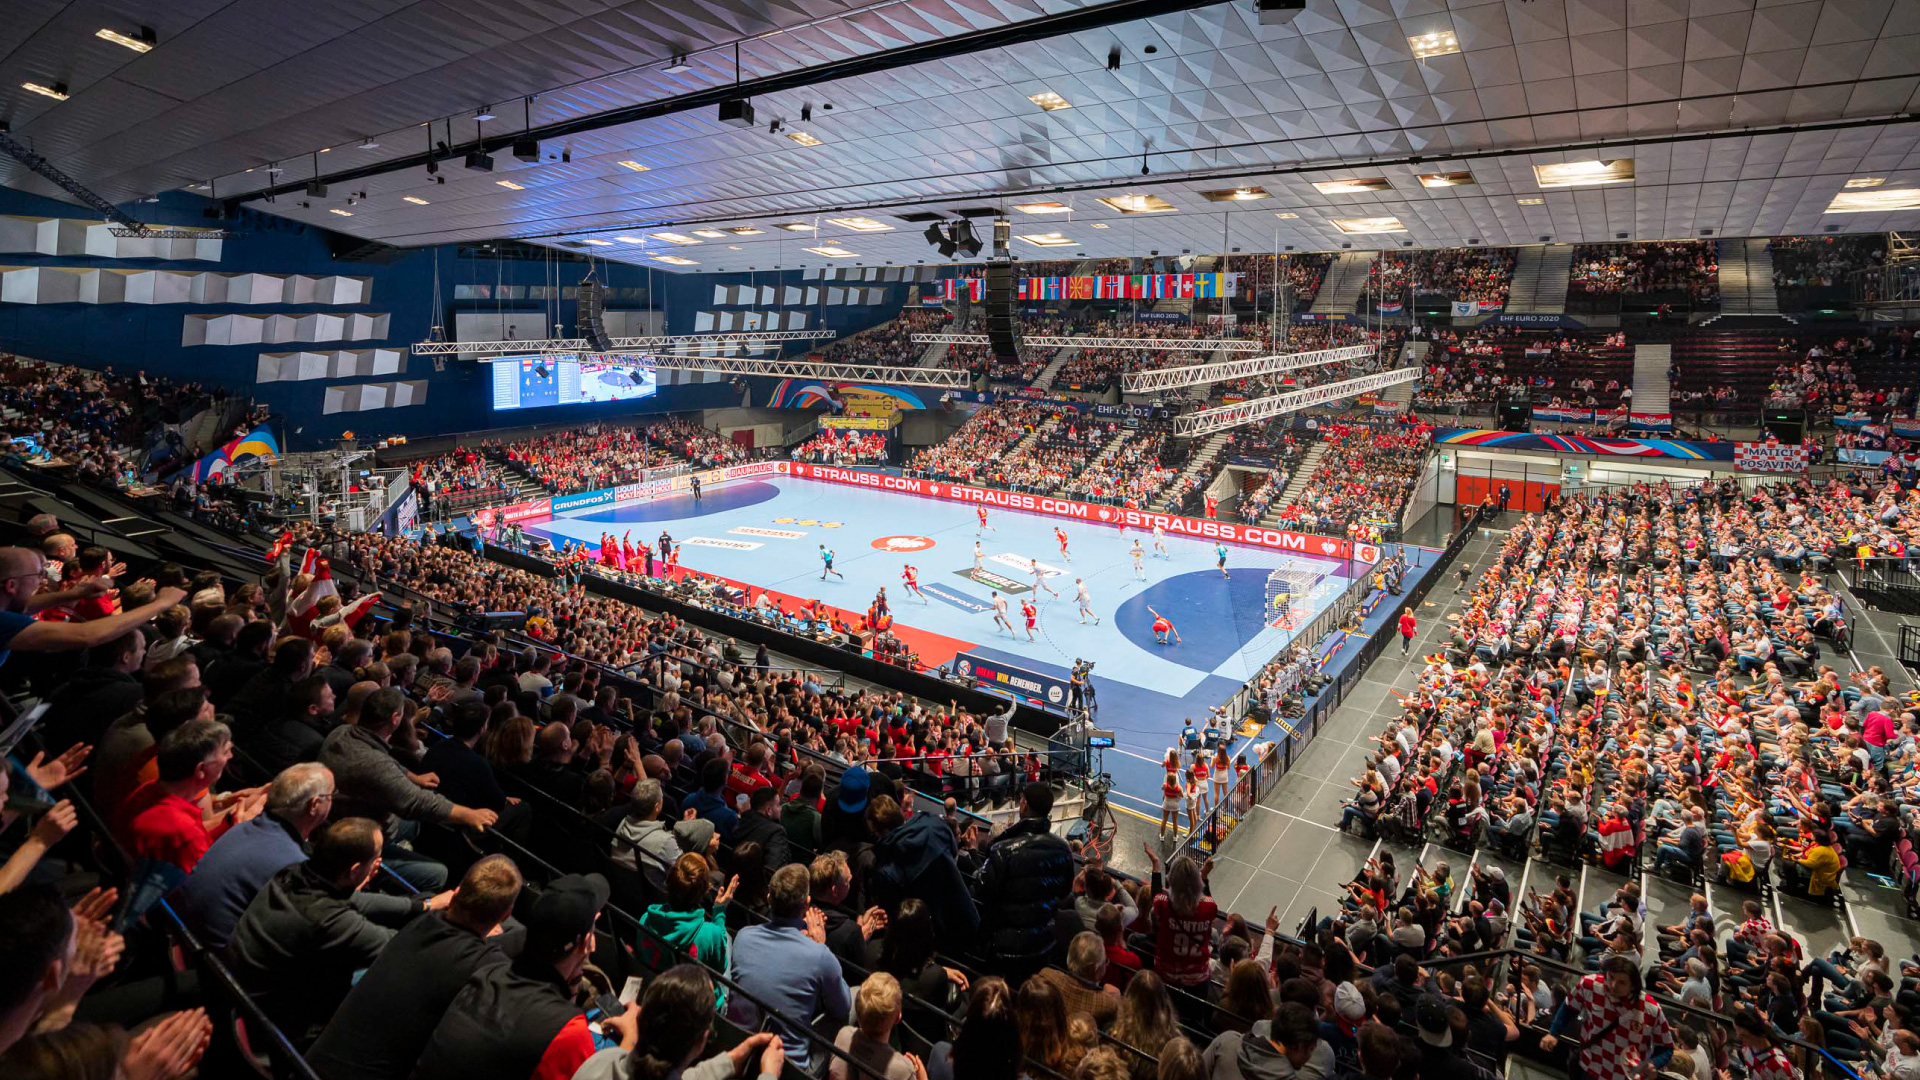 Europees kampioenschap handbal Wenen 2020 - PRG verzorgde licht, geluid en video voor dit evenement.